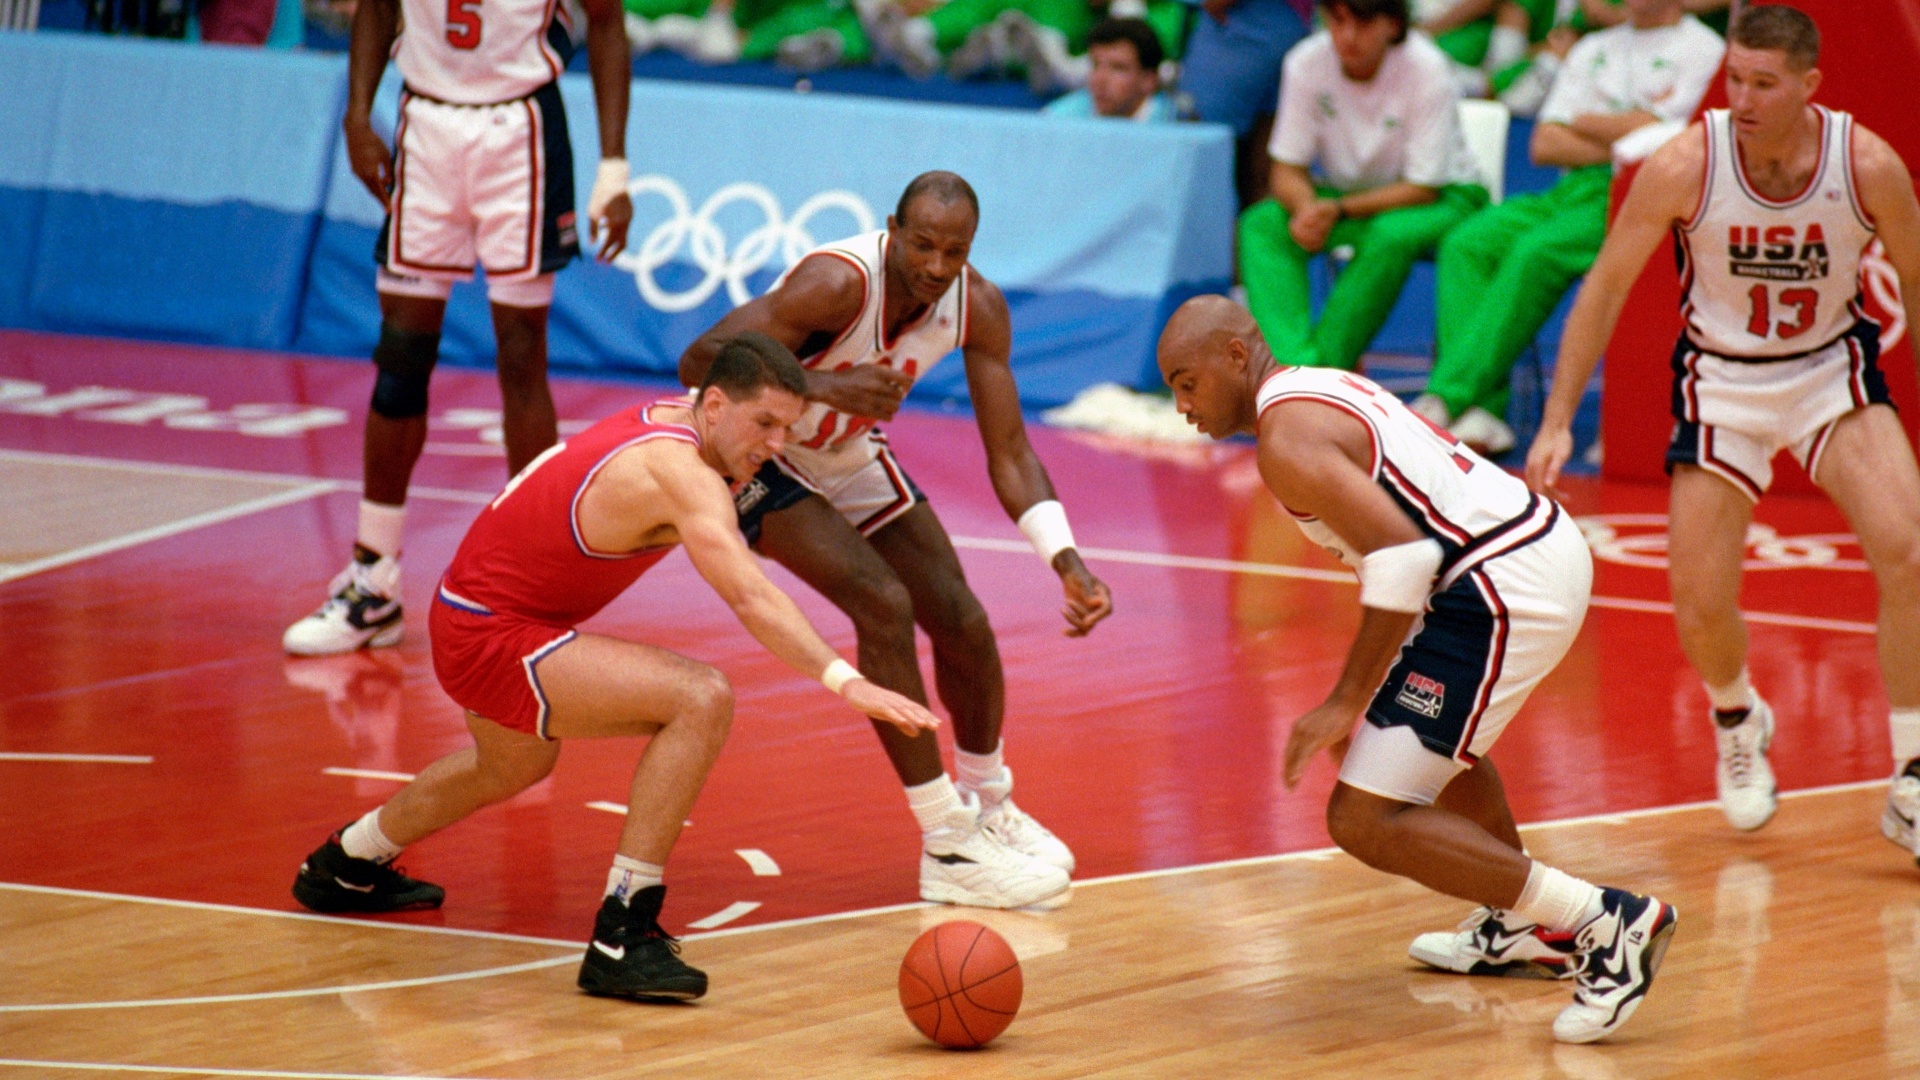 Jogadores dos Estados Unidos tentam roubar a bola na final dos Jogos de 92 contra a Croácia